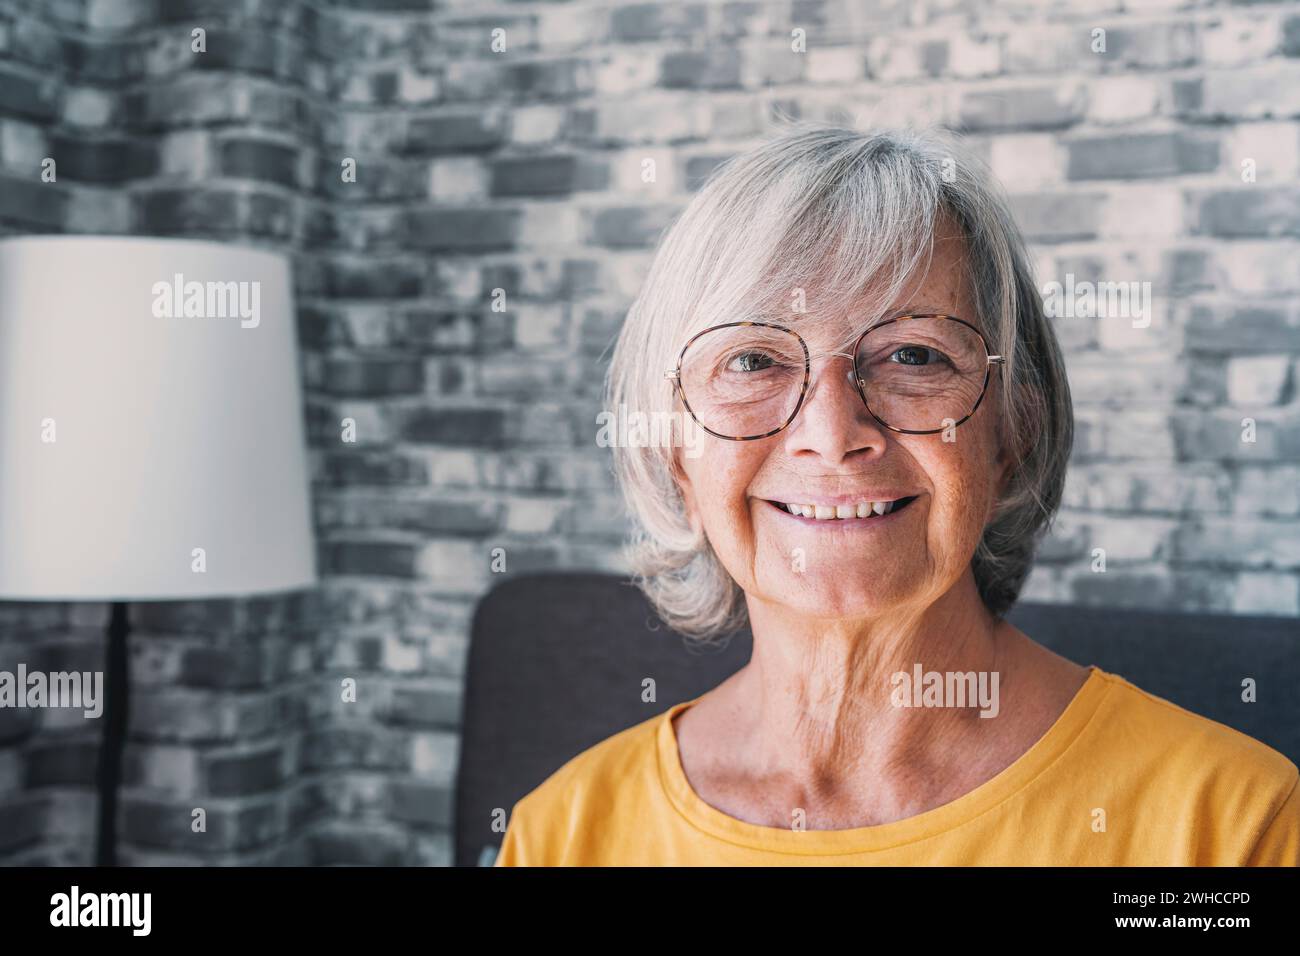 Lächelnde, reife grauhaarige Frau mittleren Alters, die in die Kamera blickt, glückliche alte Dame in Brille, die zuhause im Haus posiert, positive alleinstehende Seniorin im Ruhestand auf Sofa im Wohnzimmer. Kopffoto Porträt Stockfoto